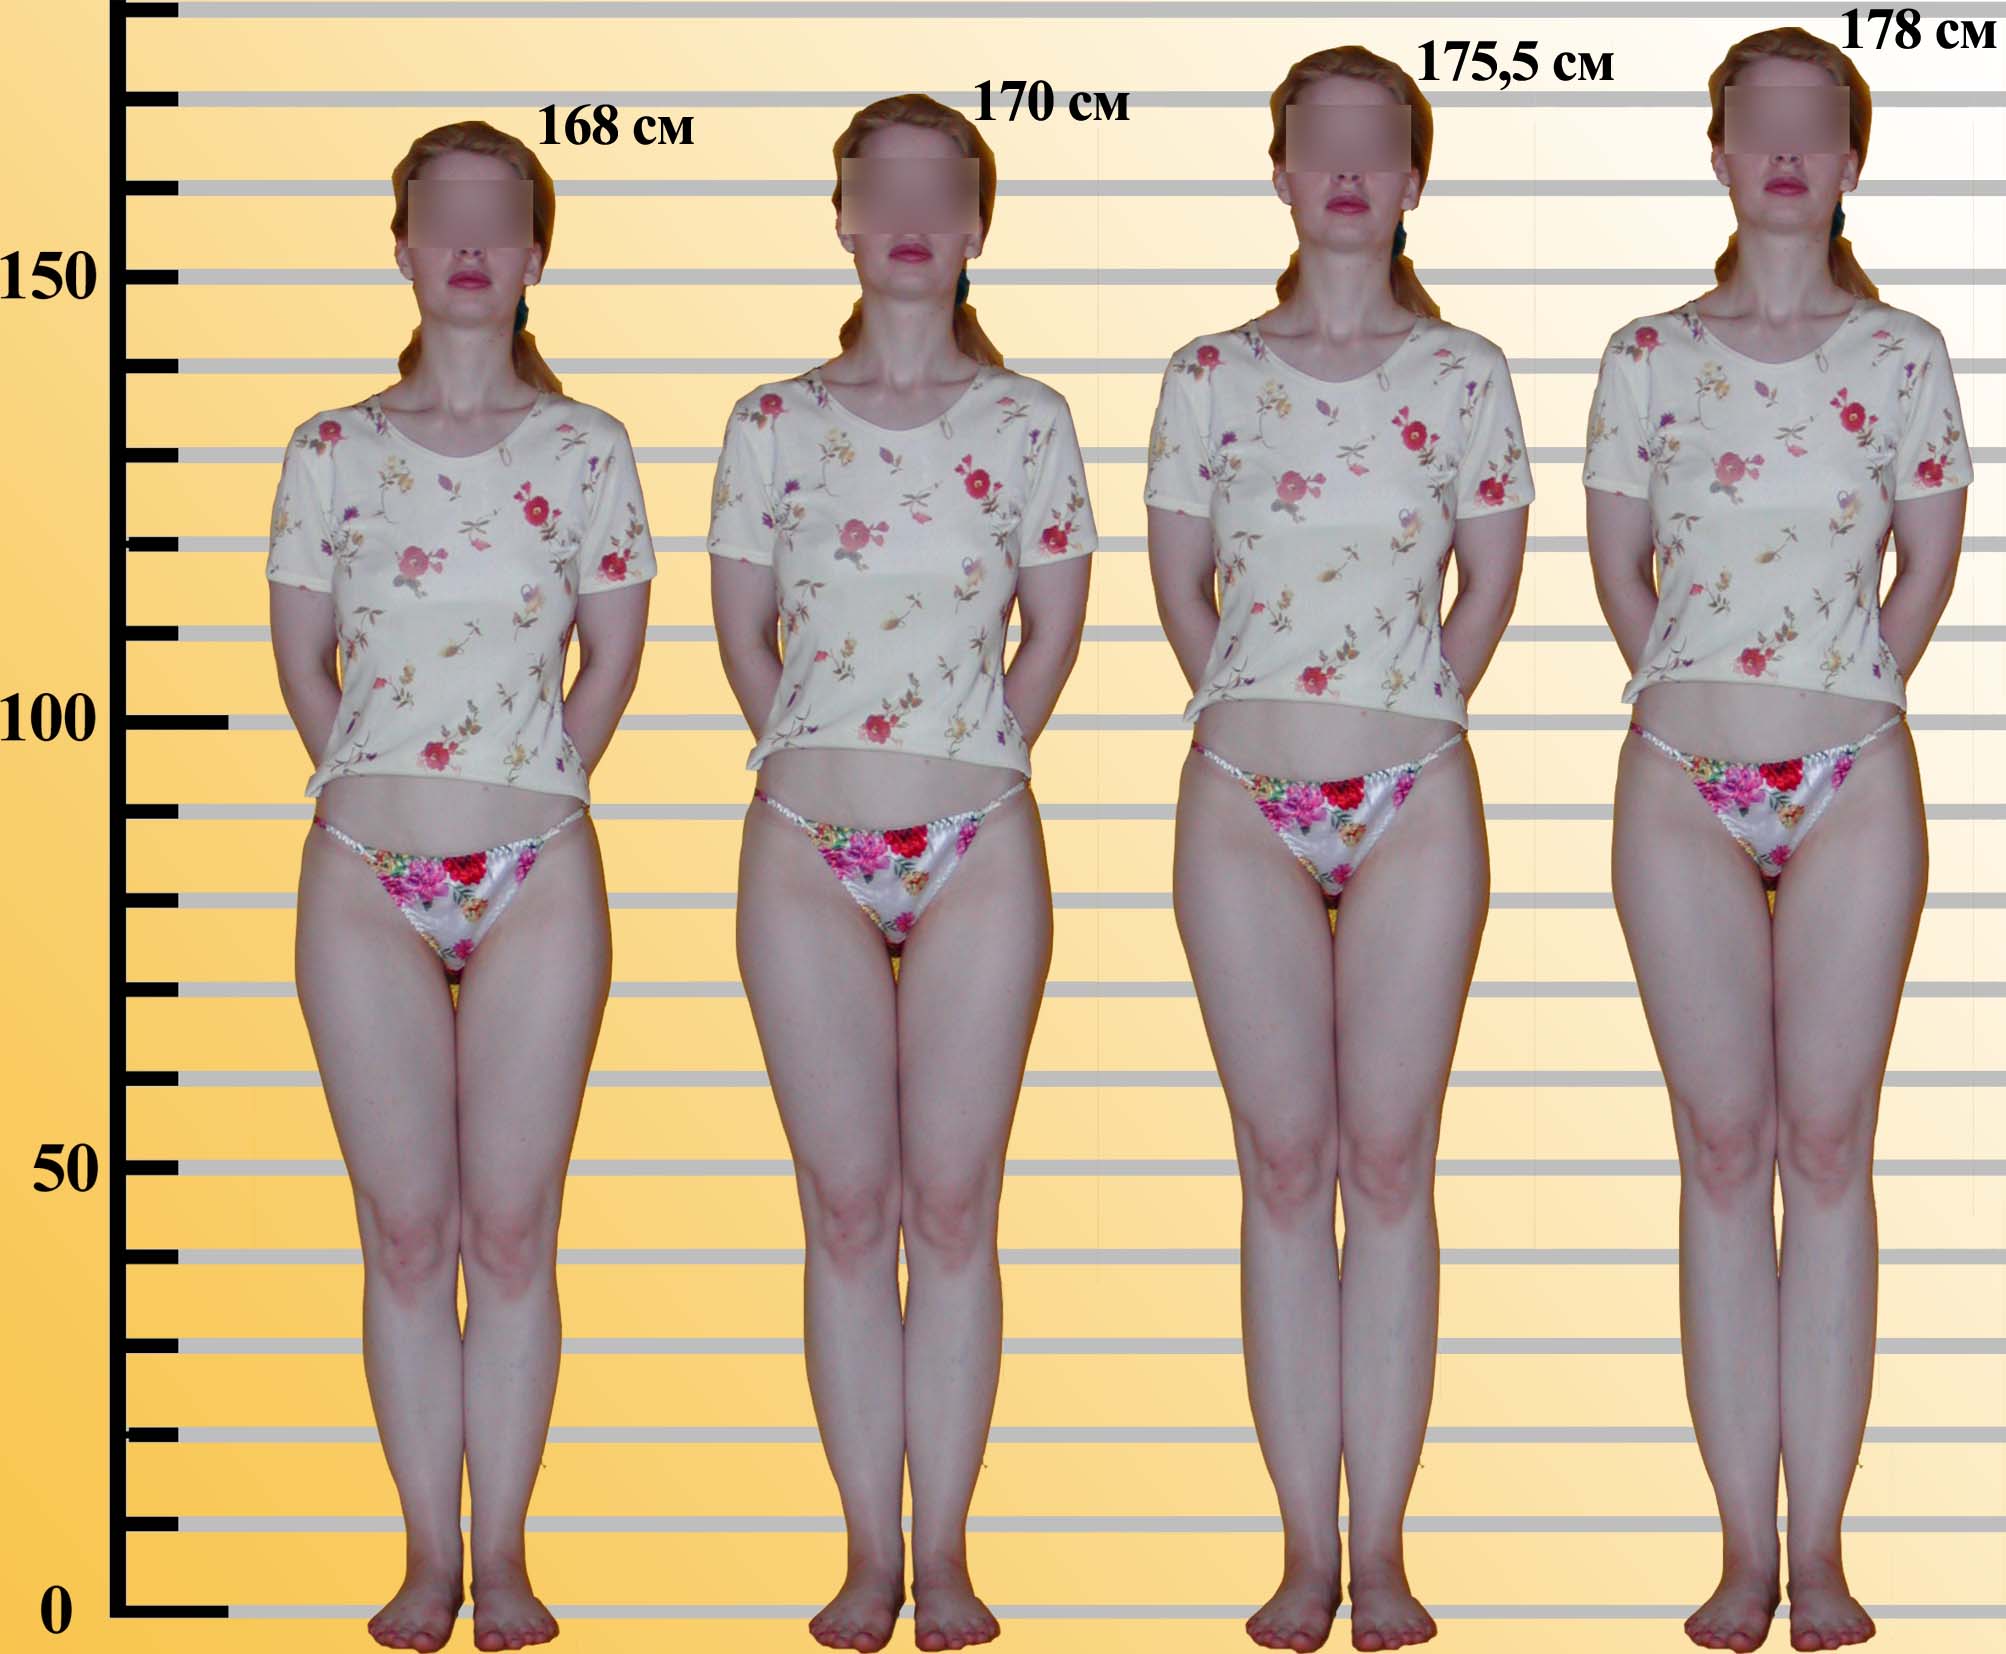 норма размеров груди у девочек фото 51